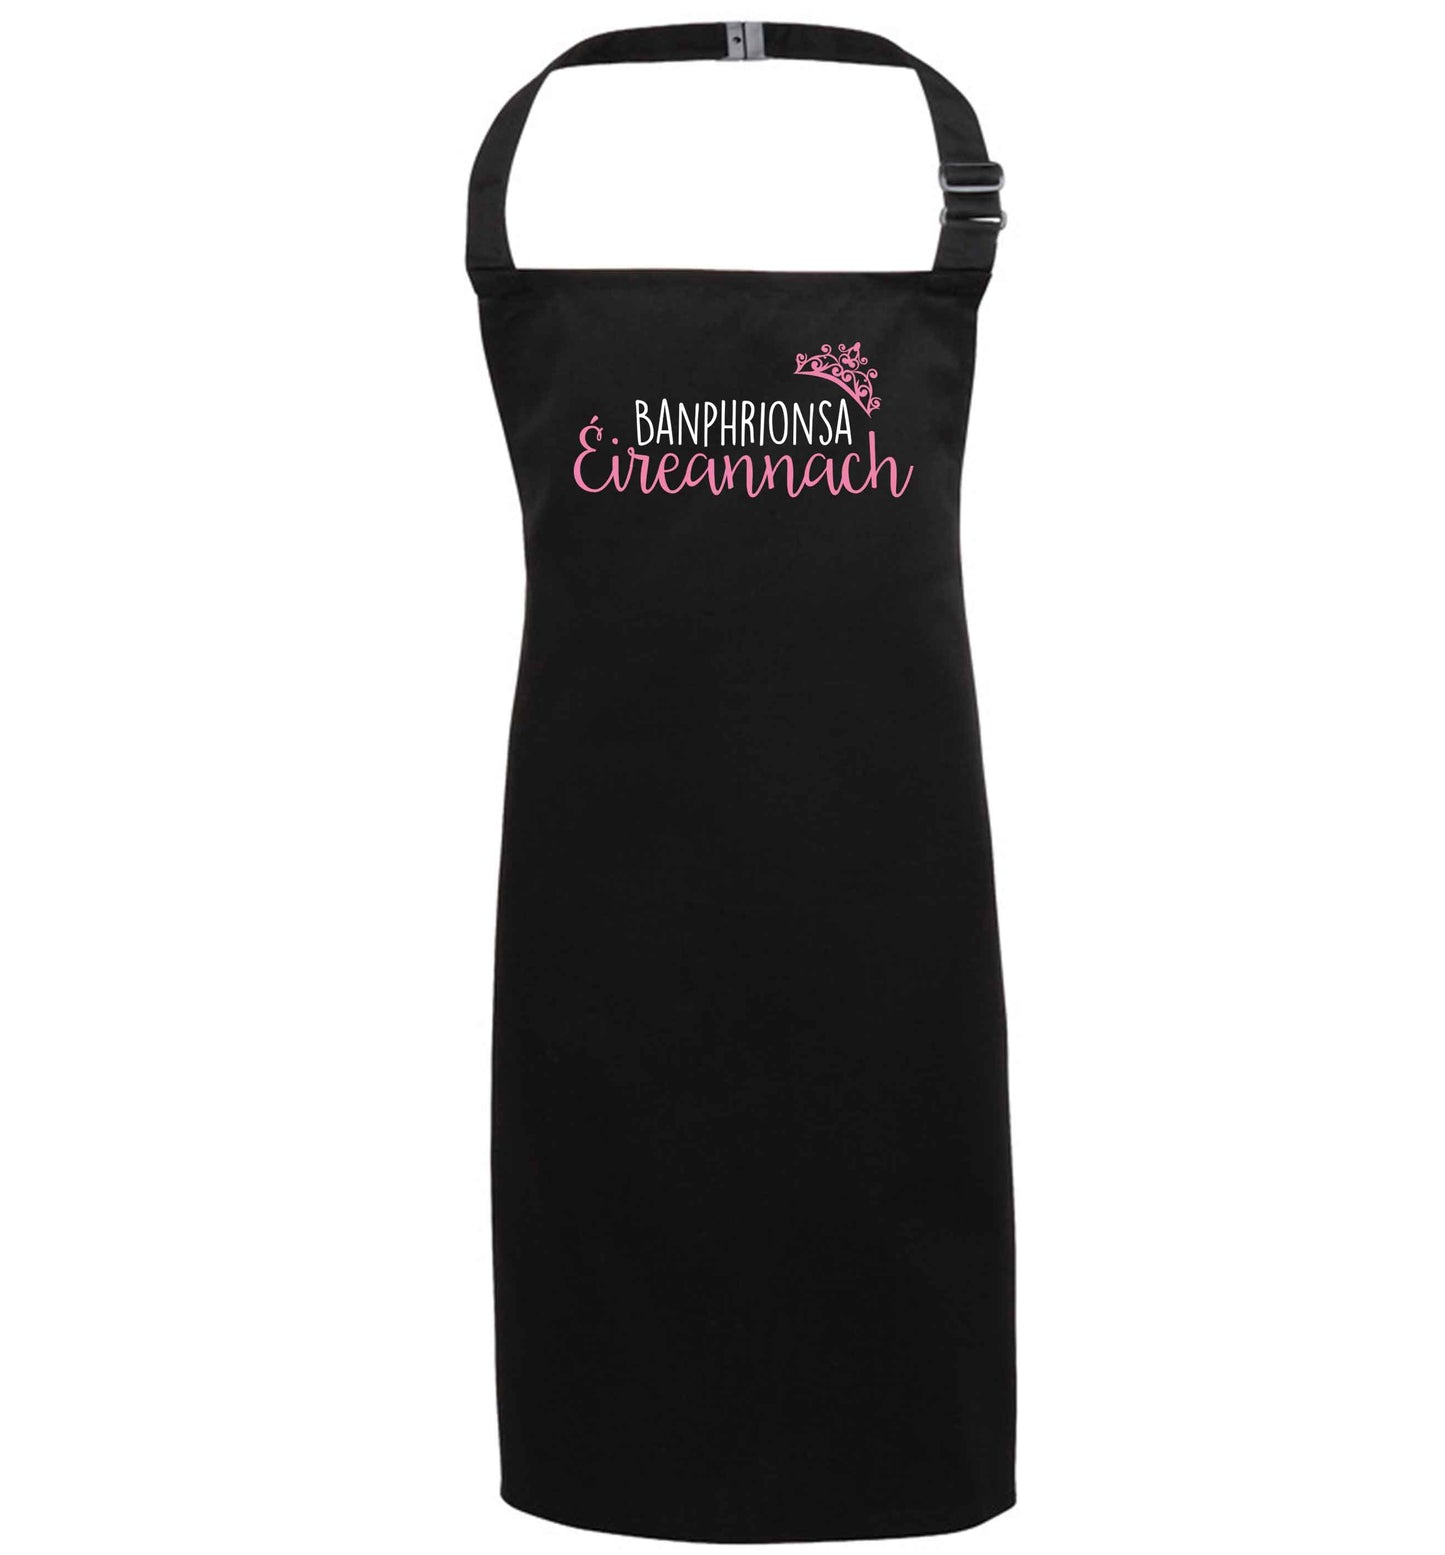 Banphrionsa eireannach black apron 7-10 years